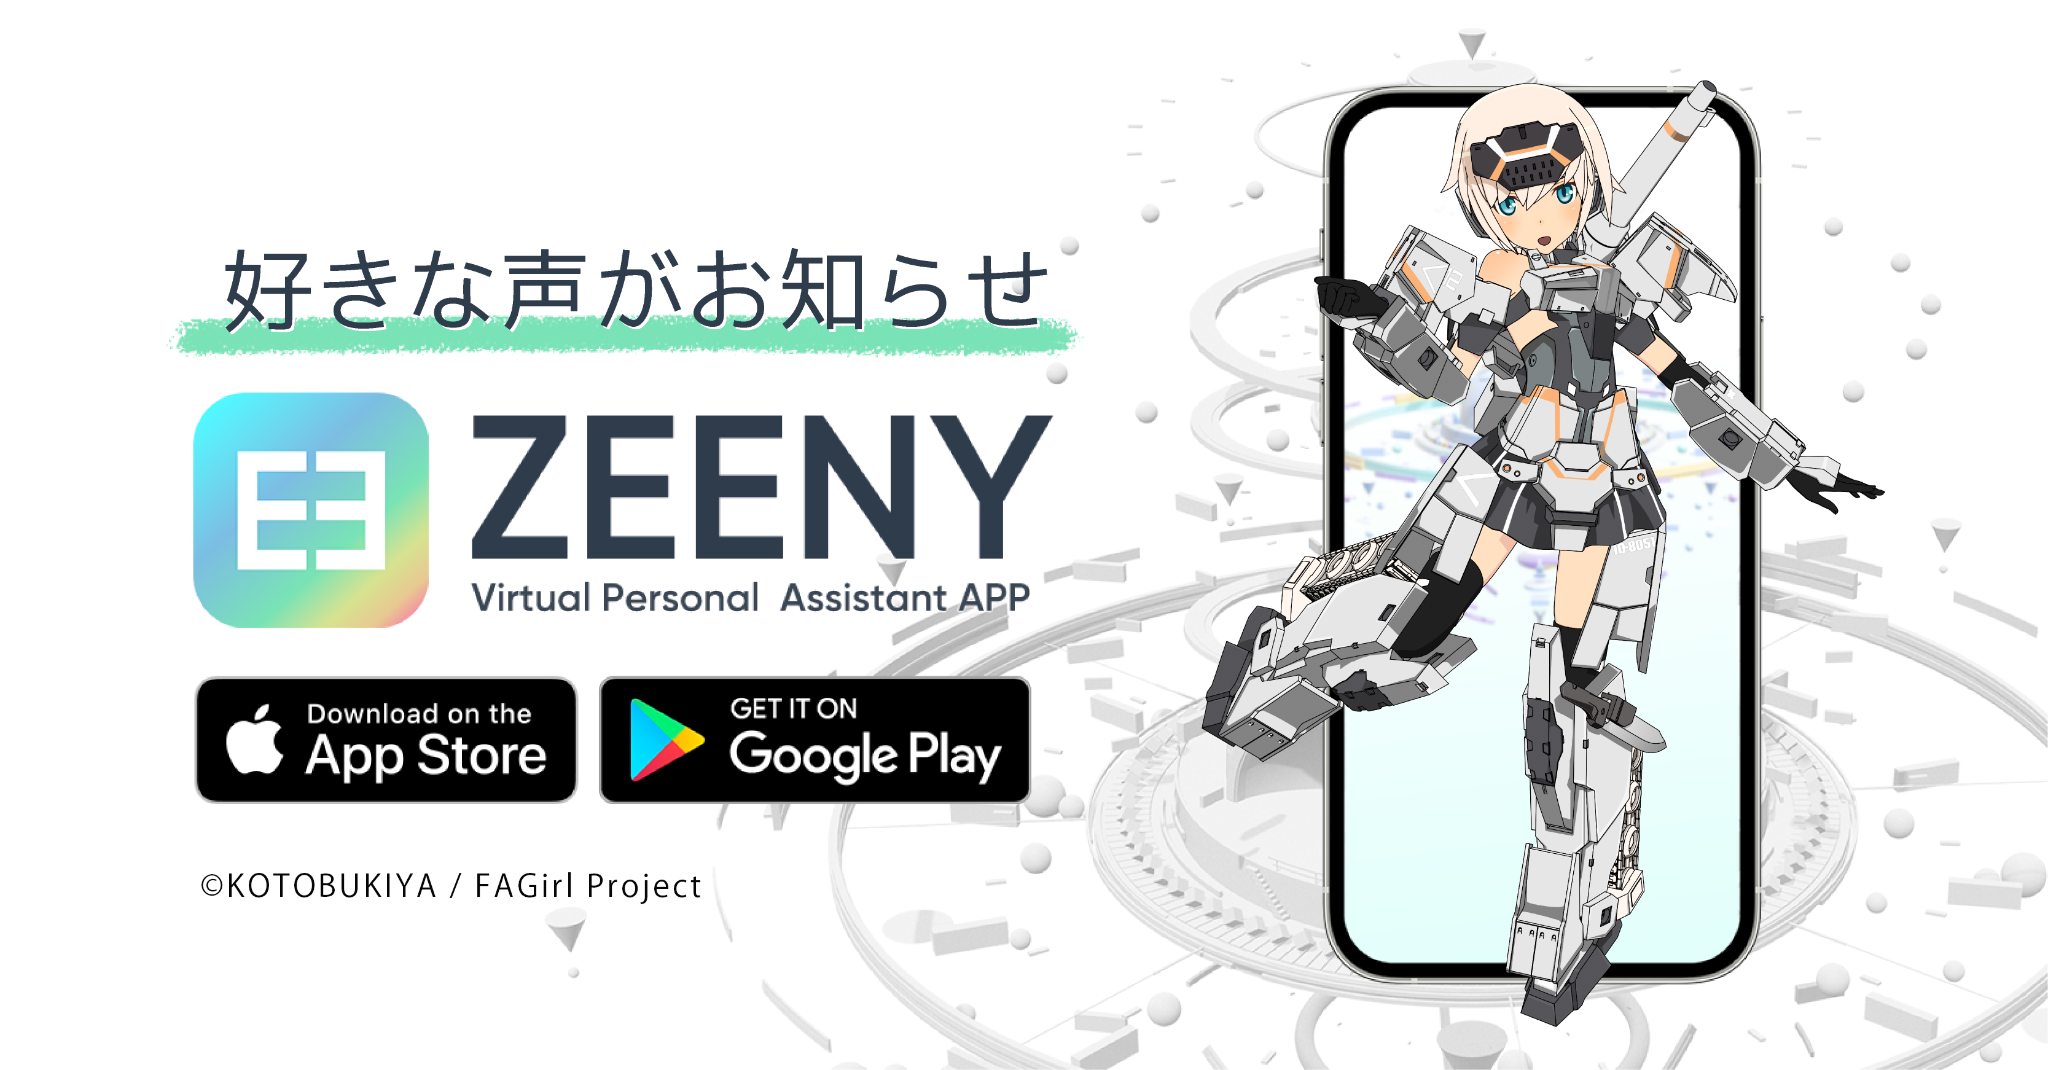 アシスタントアプリ「Zeeny アシスタント」に「轟雷」が登場!